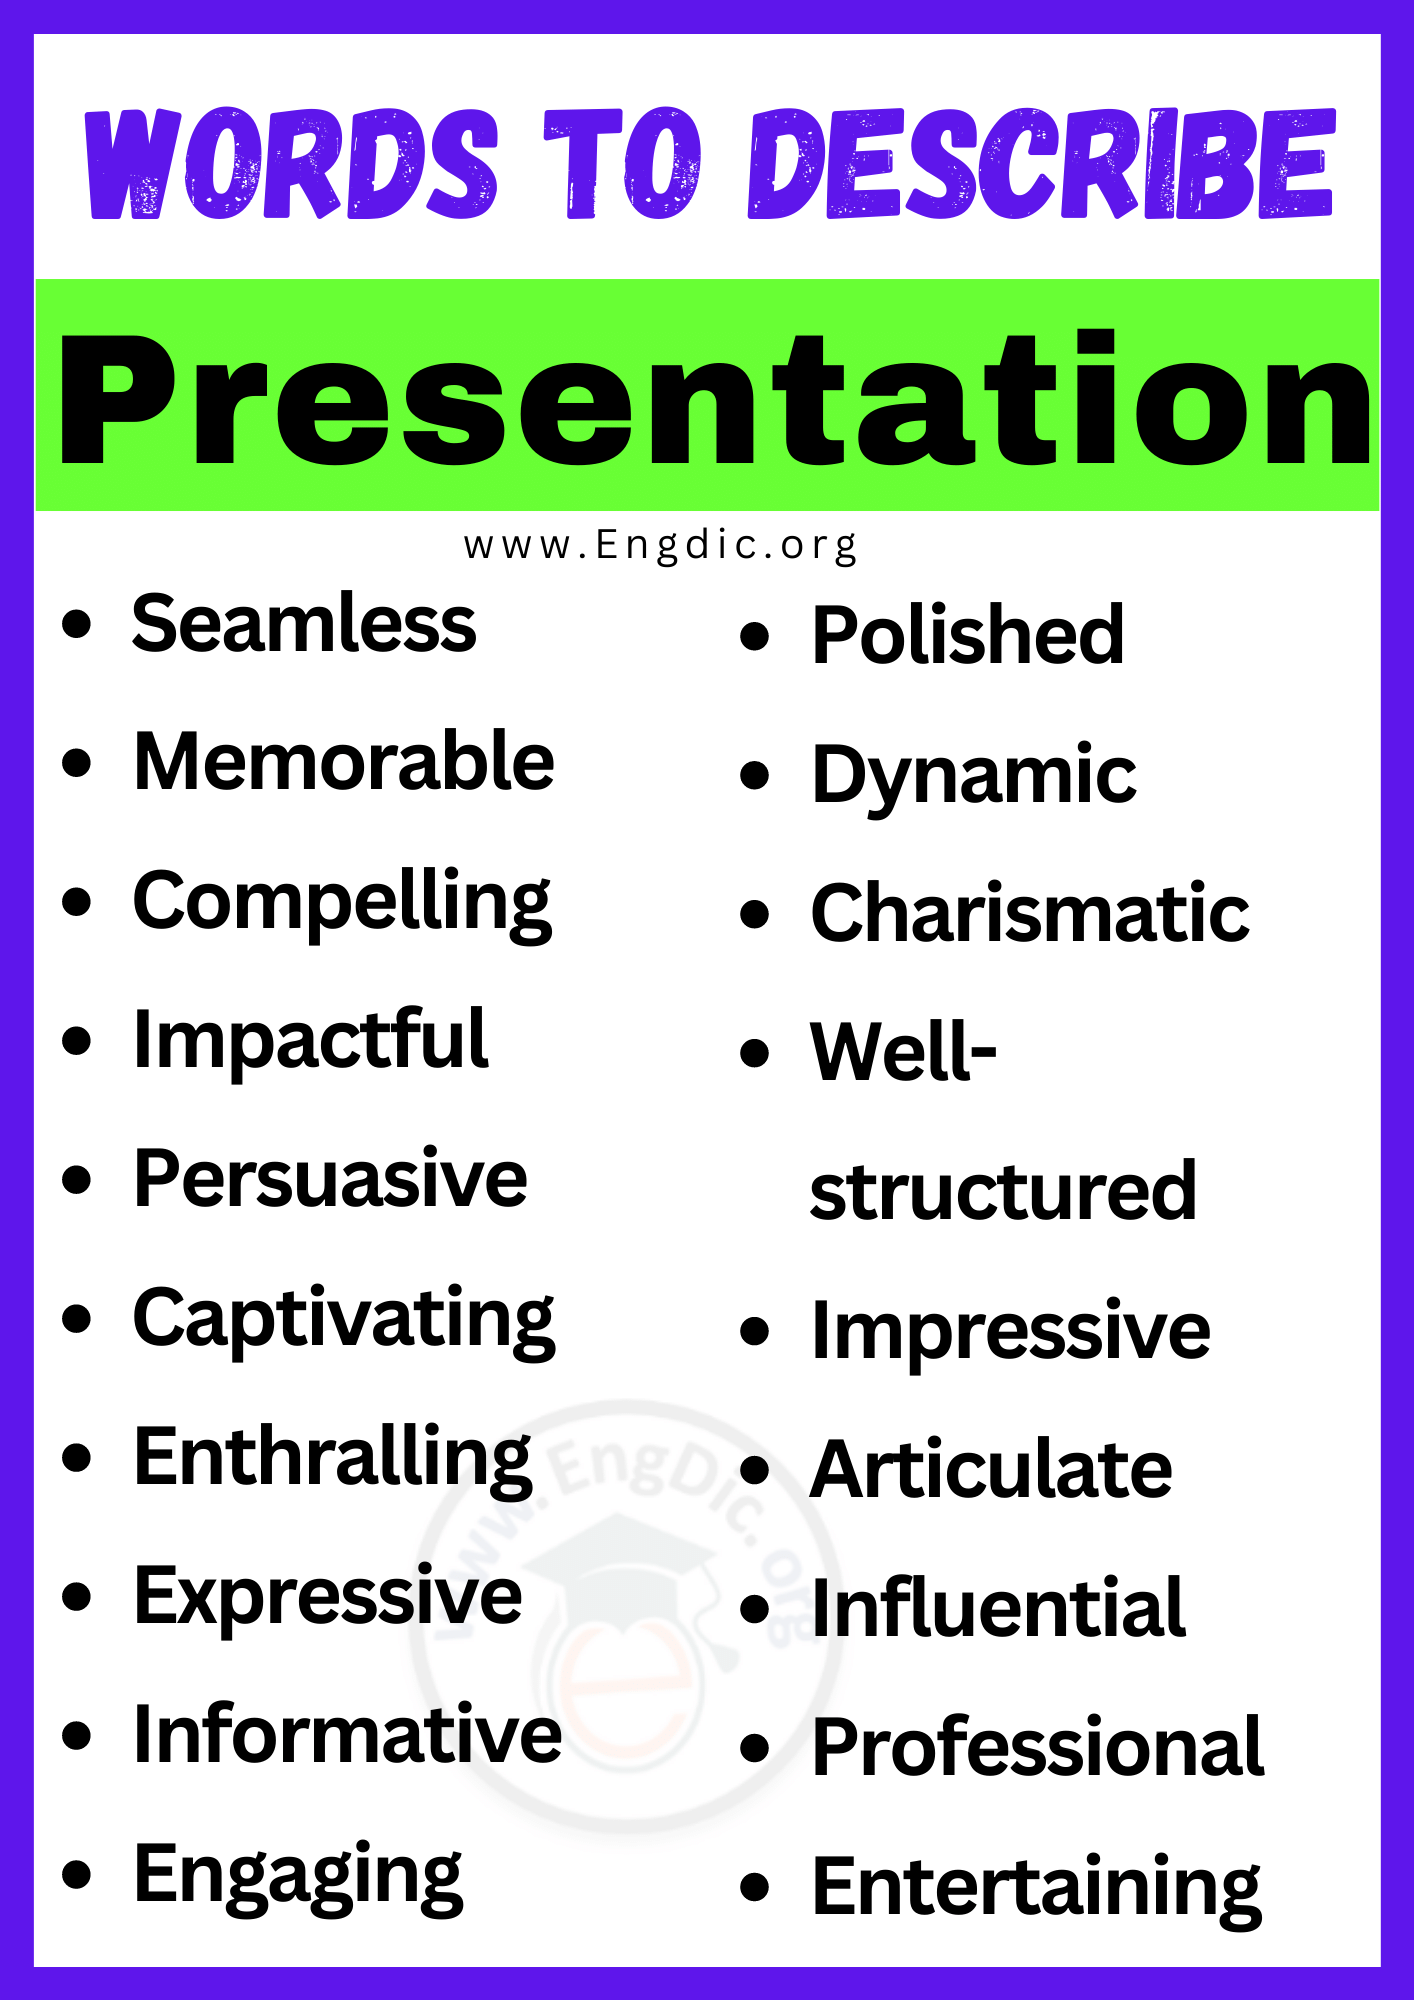 Words to Describe Presentation